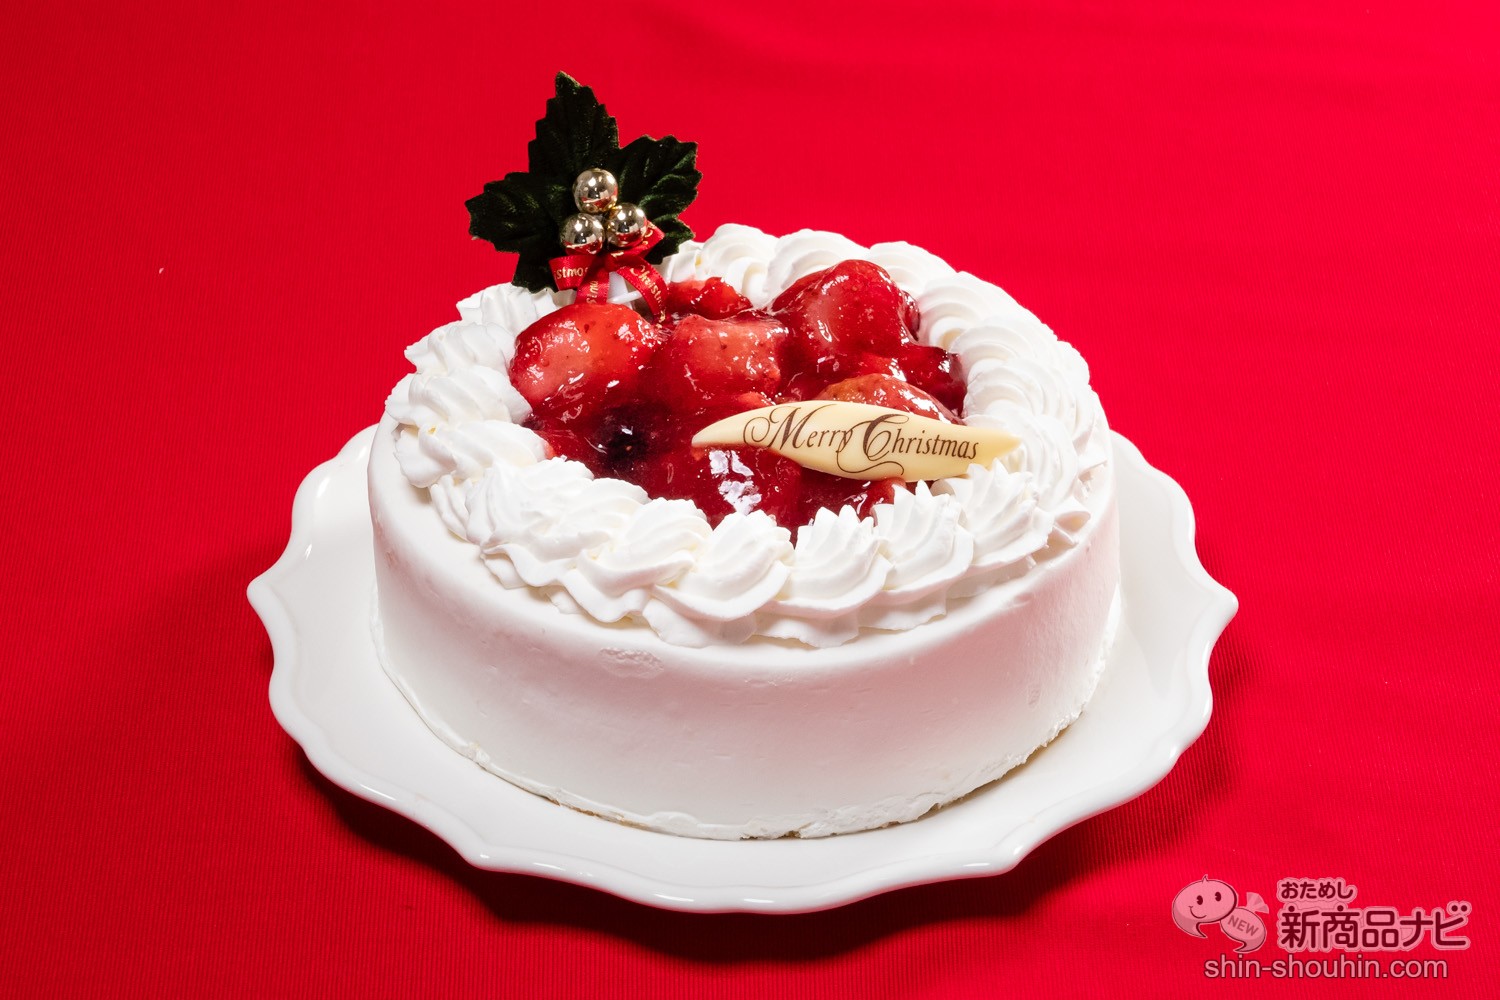 おためし新商品ナビ Blog Archive クリスマスケーキの定番 苺たっぷりの贅沢ショートケーキをお取り寄せ 新宿kojimaya 苺と木の実のショートケーキ5号